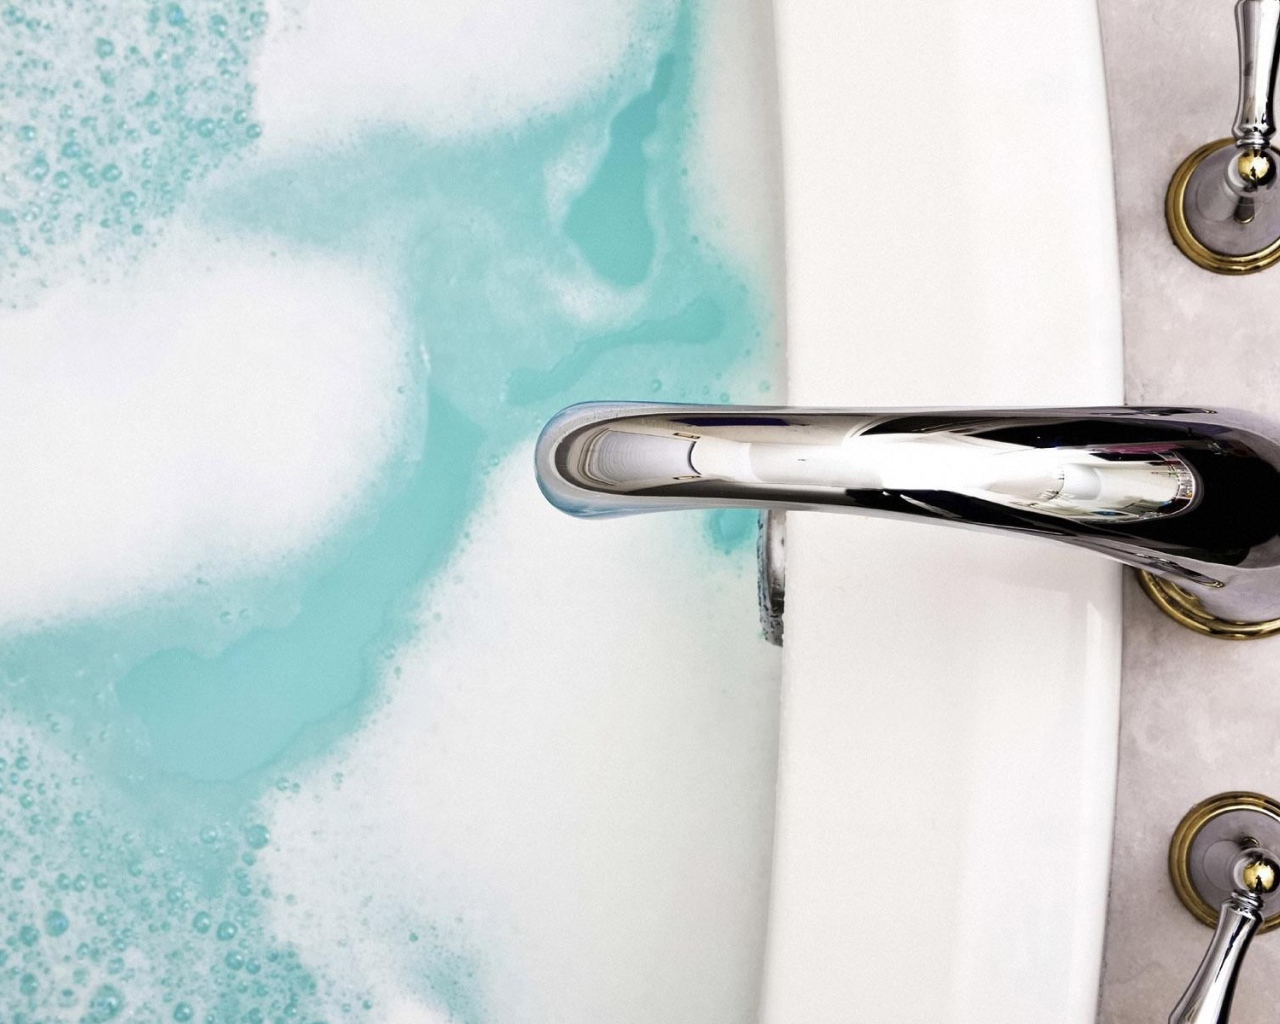 Кран над ванной с голубой водой